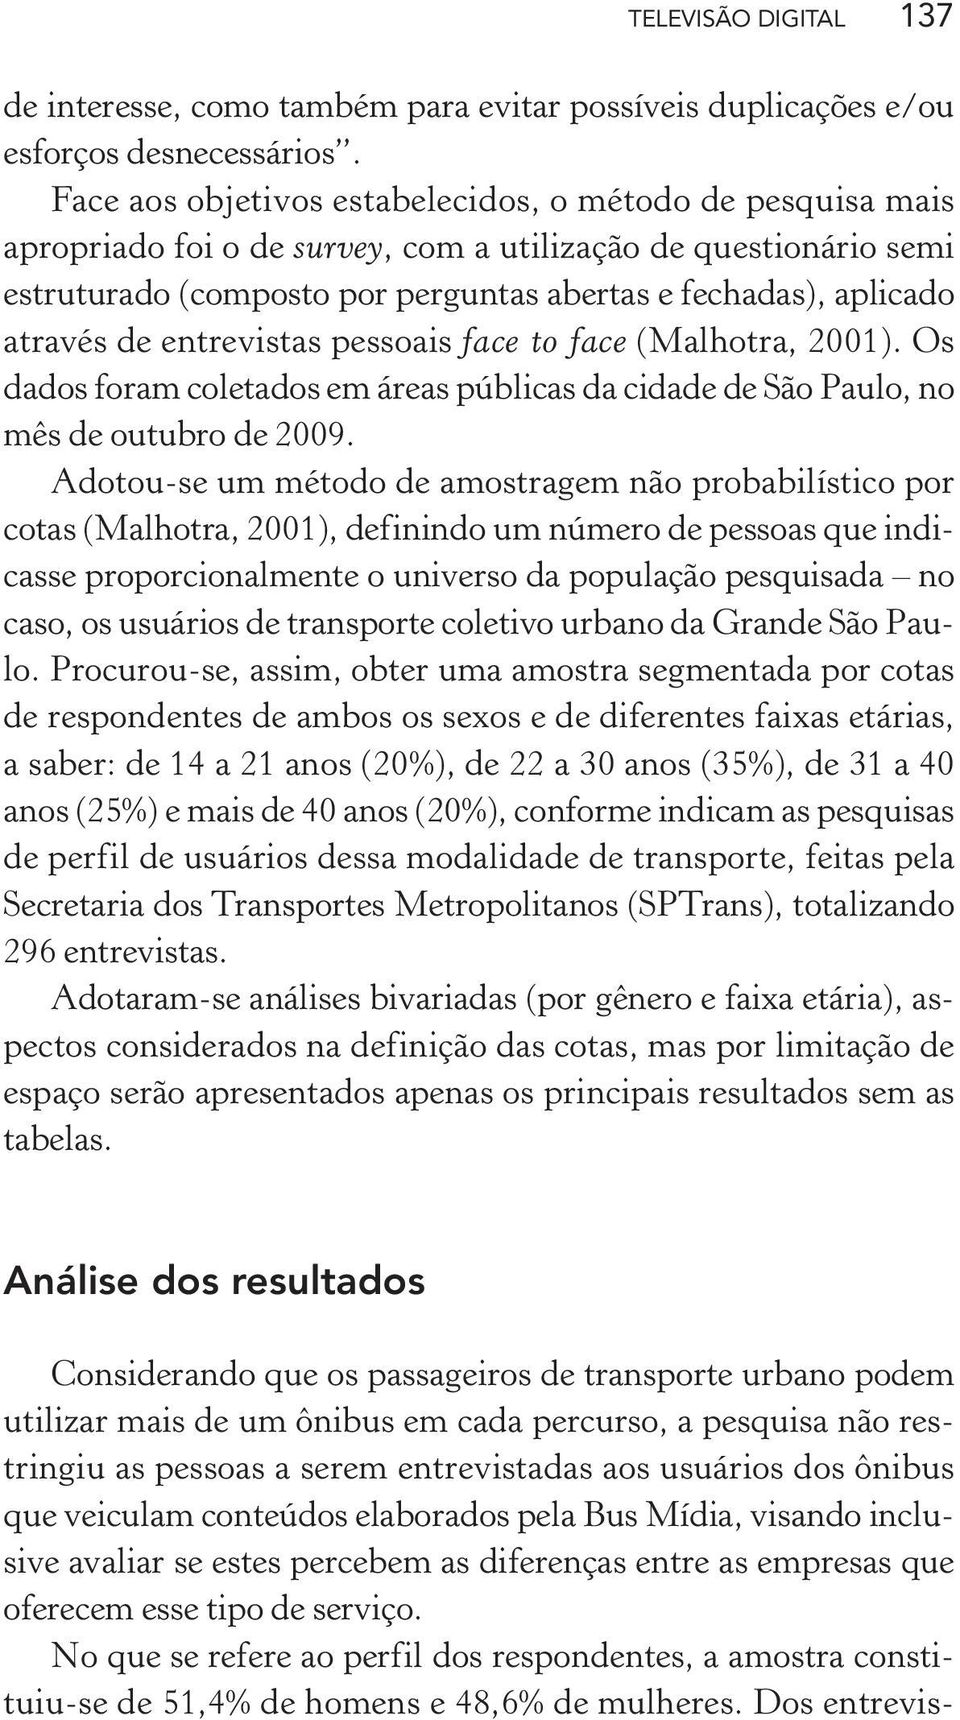 de entrevistas pessoais face to face (Malhotra, 2001). Os dados foram coletados em áreas públicas da cidade de São Paulo, no mês de outubro de 2009.